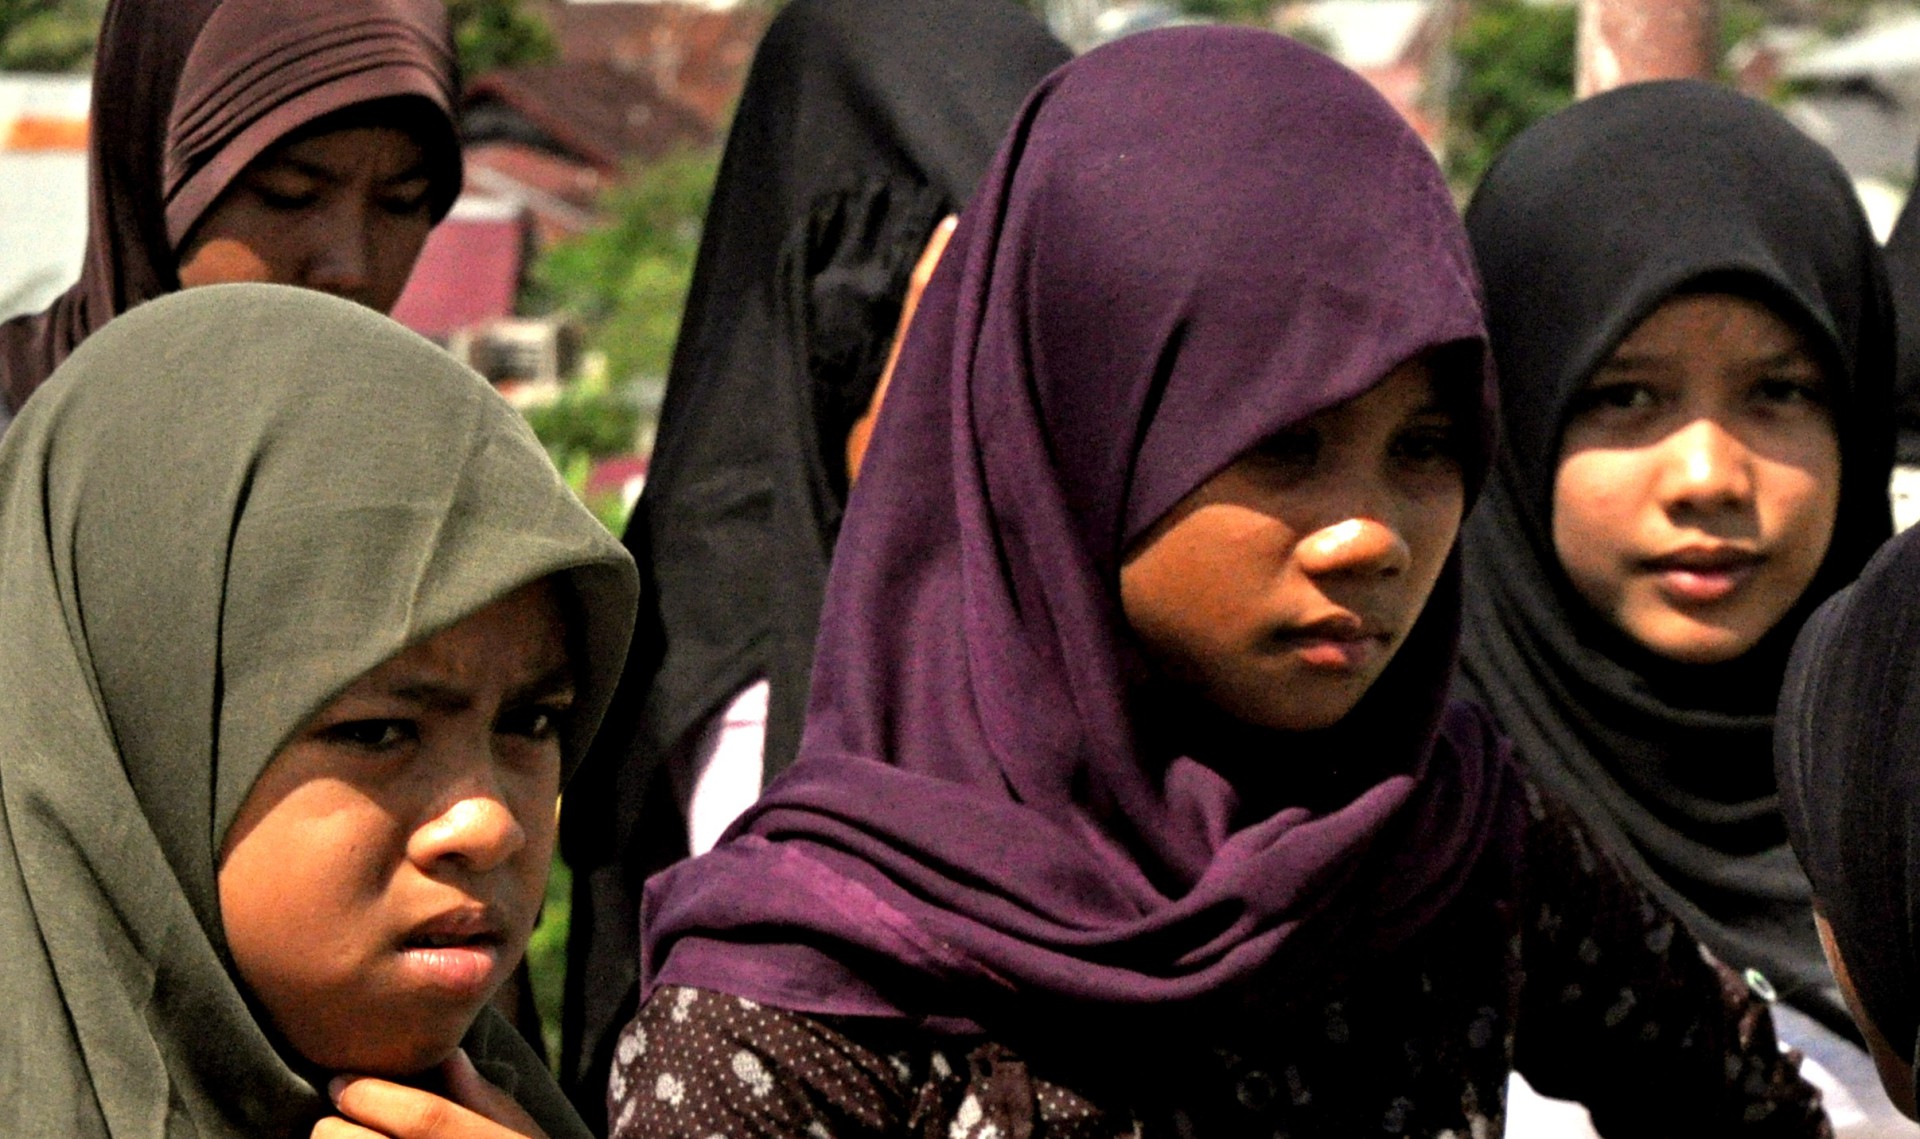 Dans la province d'Aceh, en Indonésie, la tenue vestimentaire est strictement contrôlée (Photo:Indo-girl2010/Flickr/CC BY 2.0)